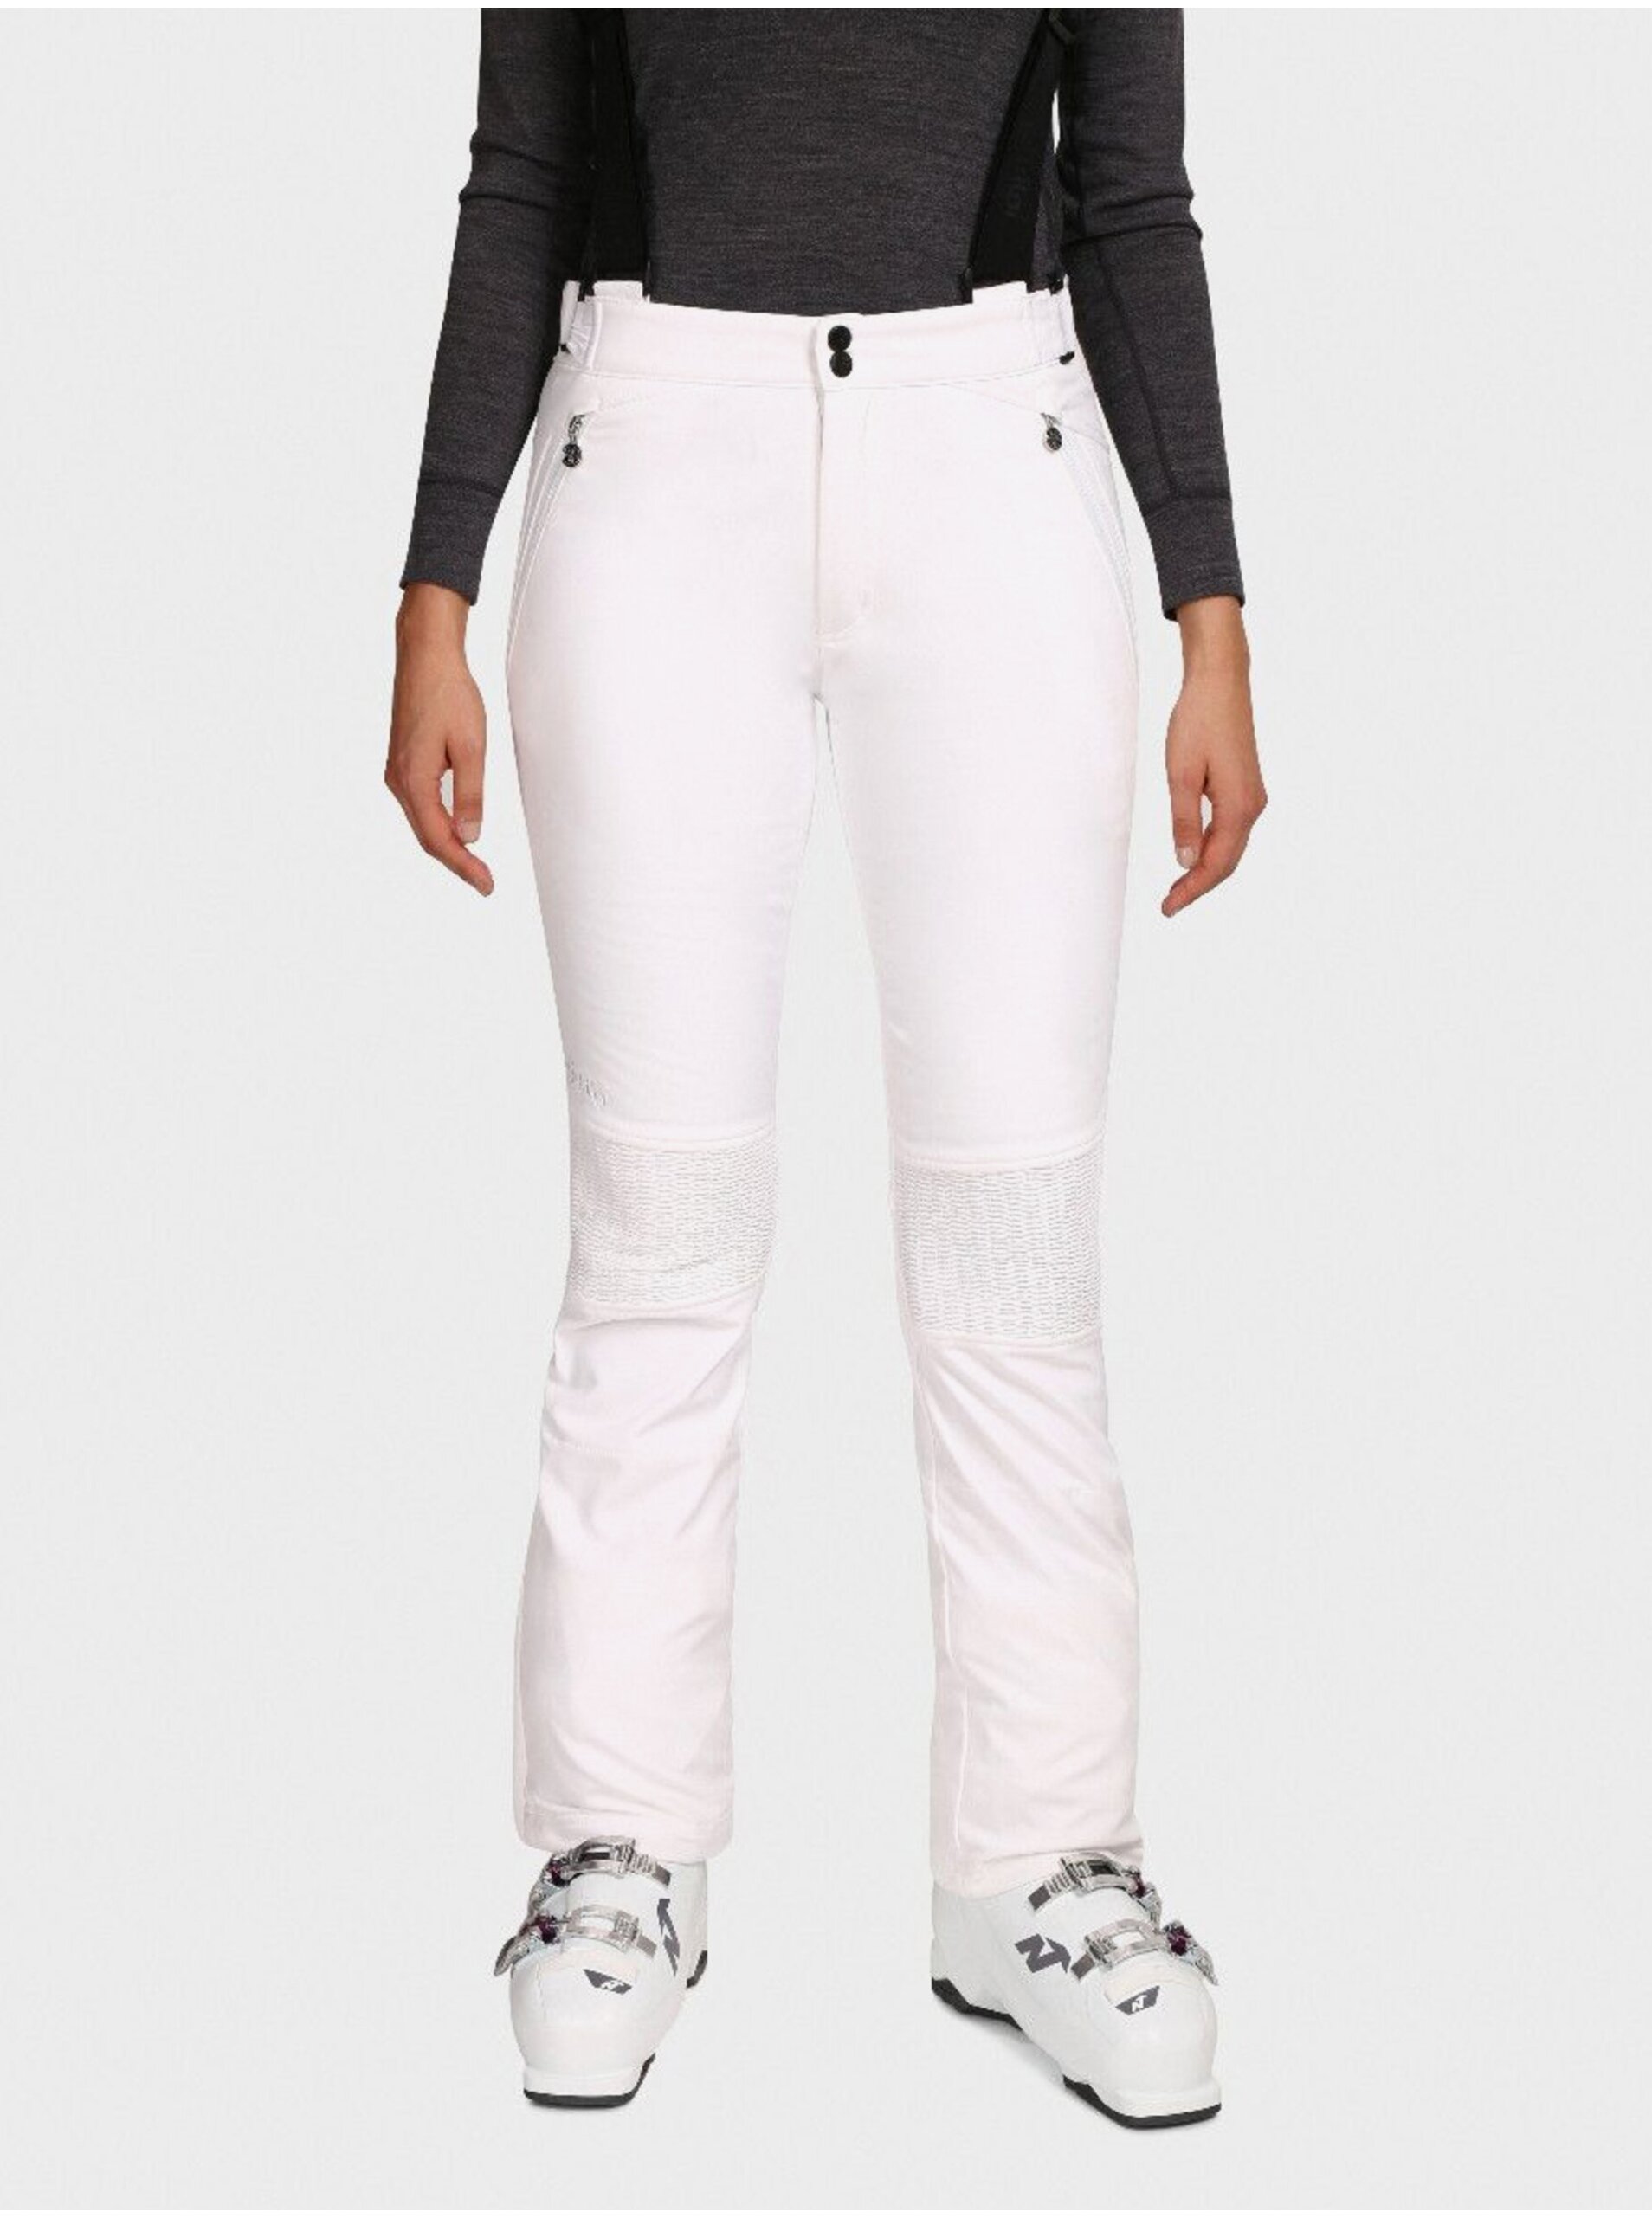 E-shop Bílé dámské softshellové lyžařské kalhoty Kilpi DIONE